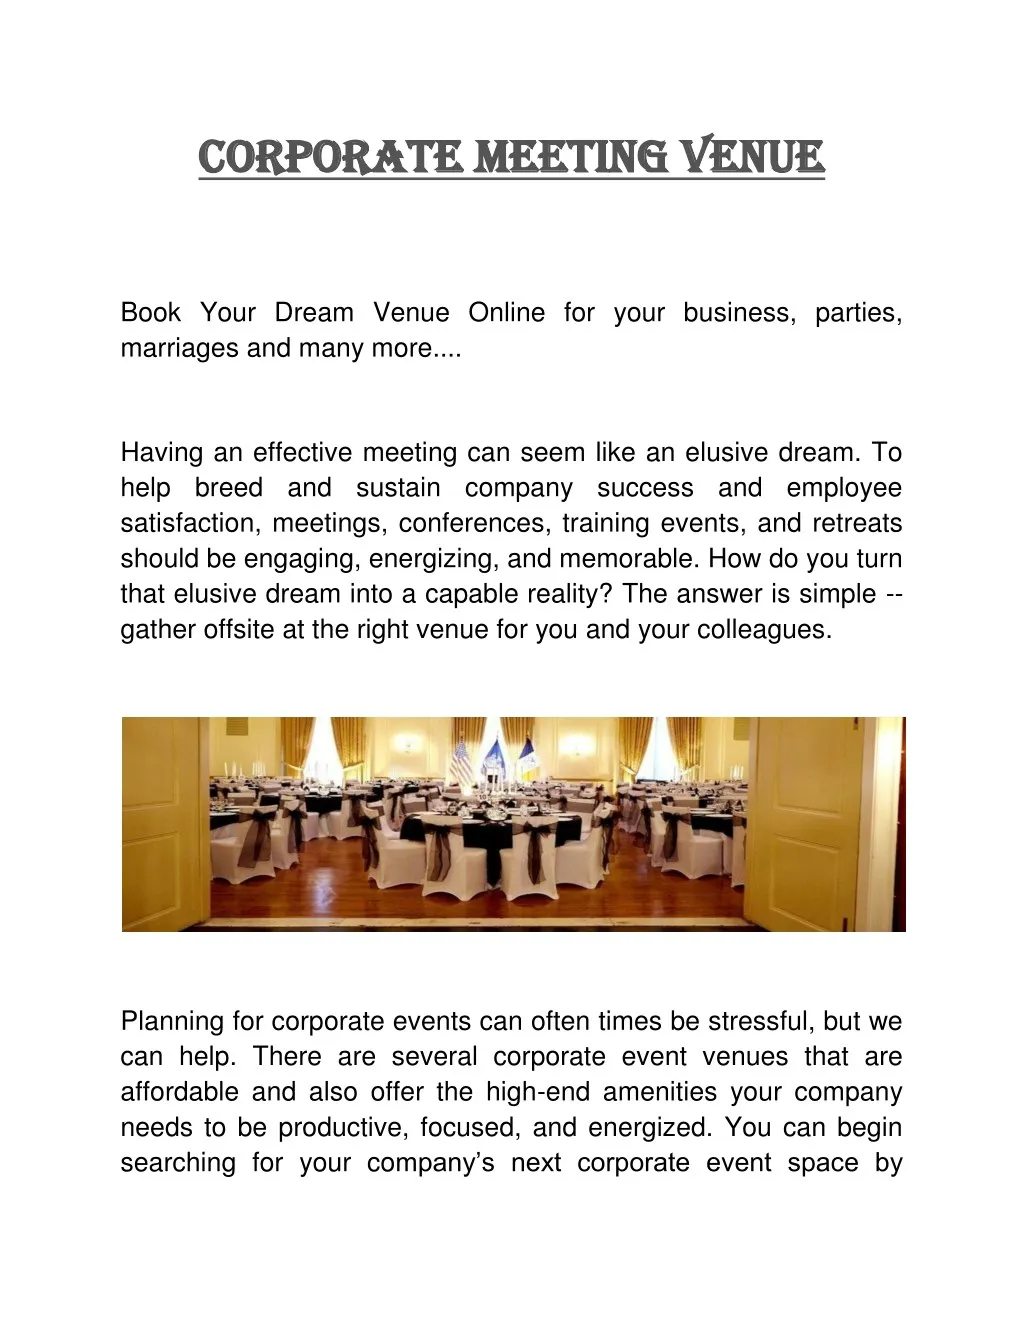 corporate meeting venue corporate meeting venue